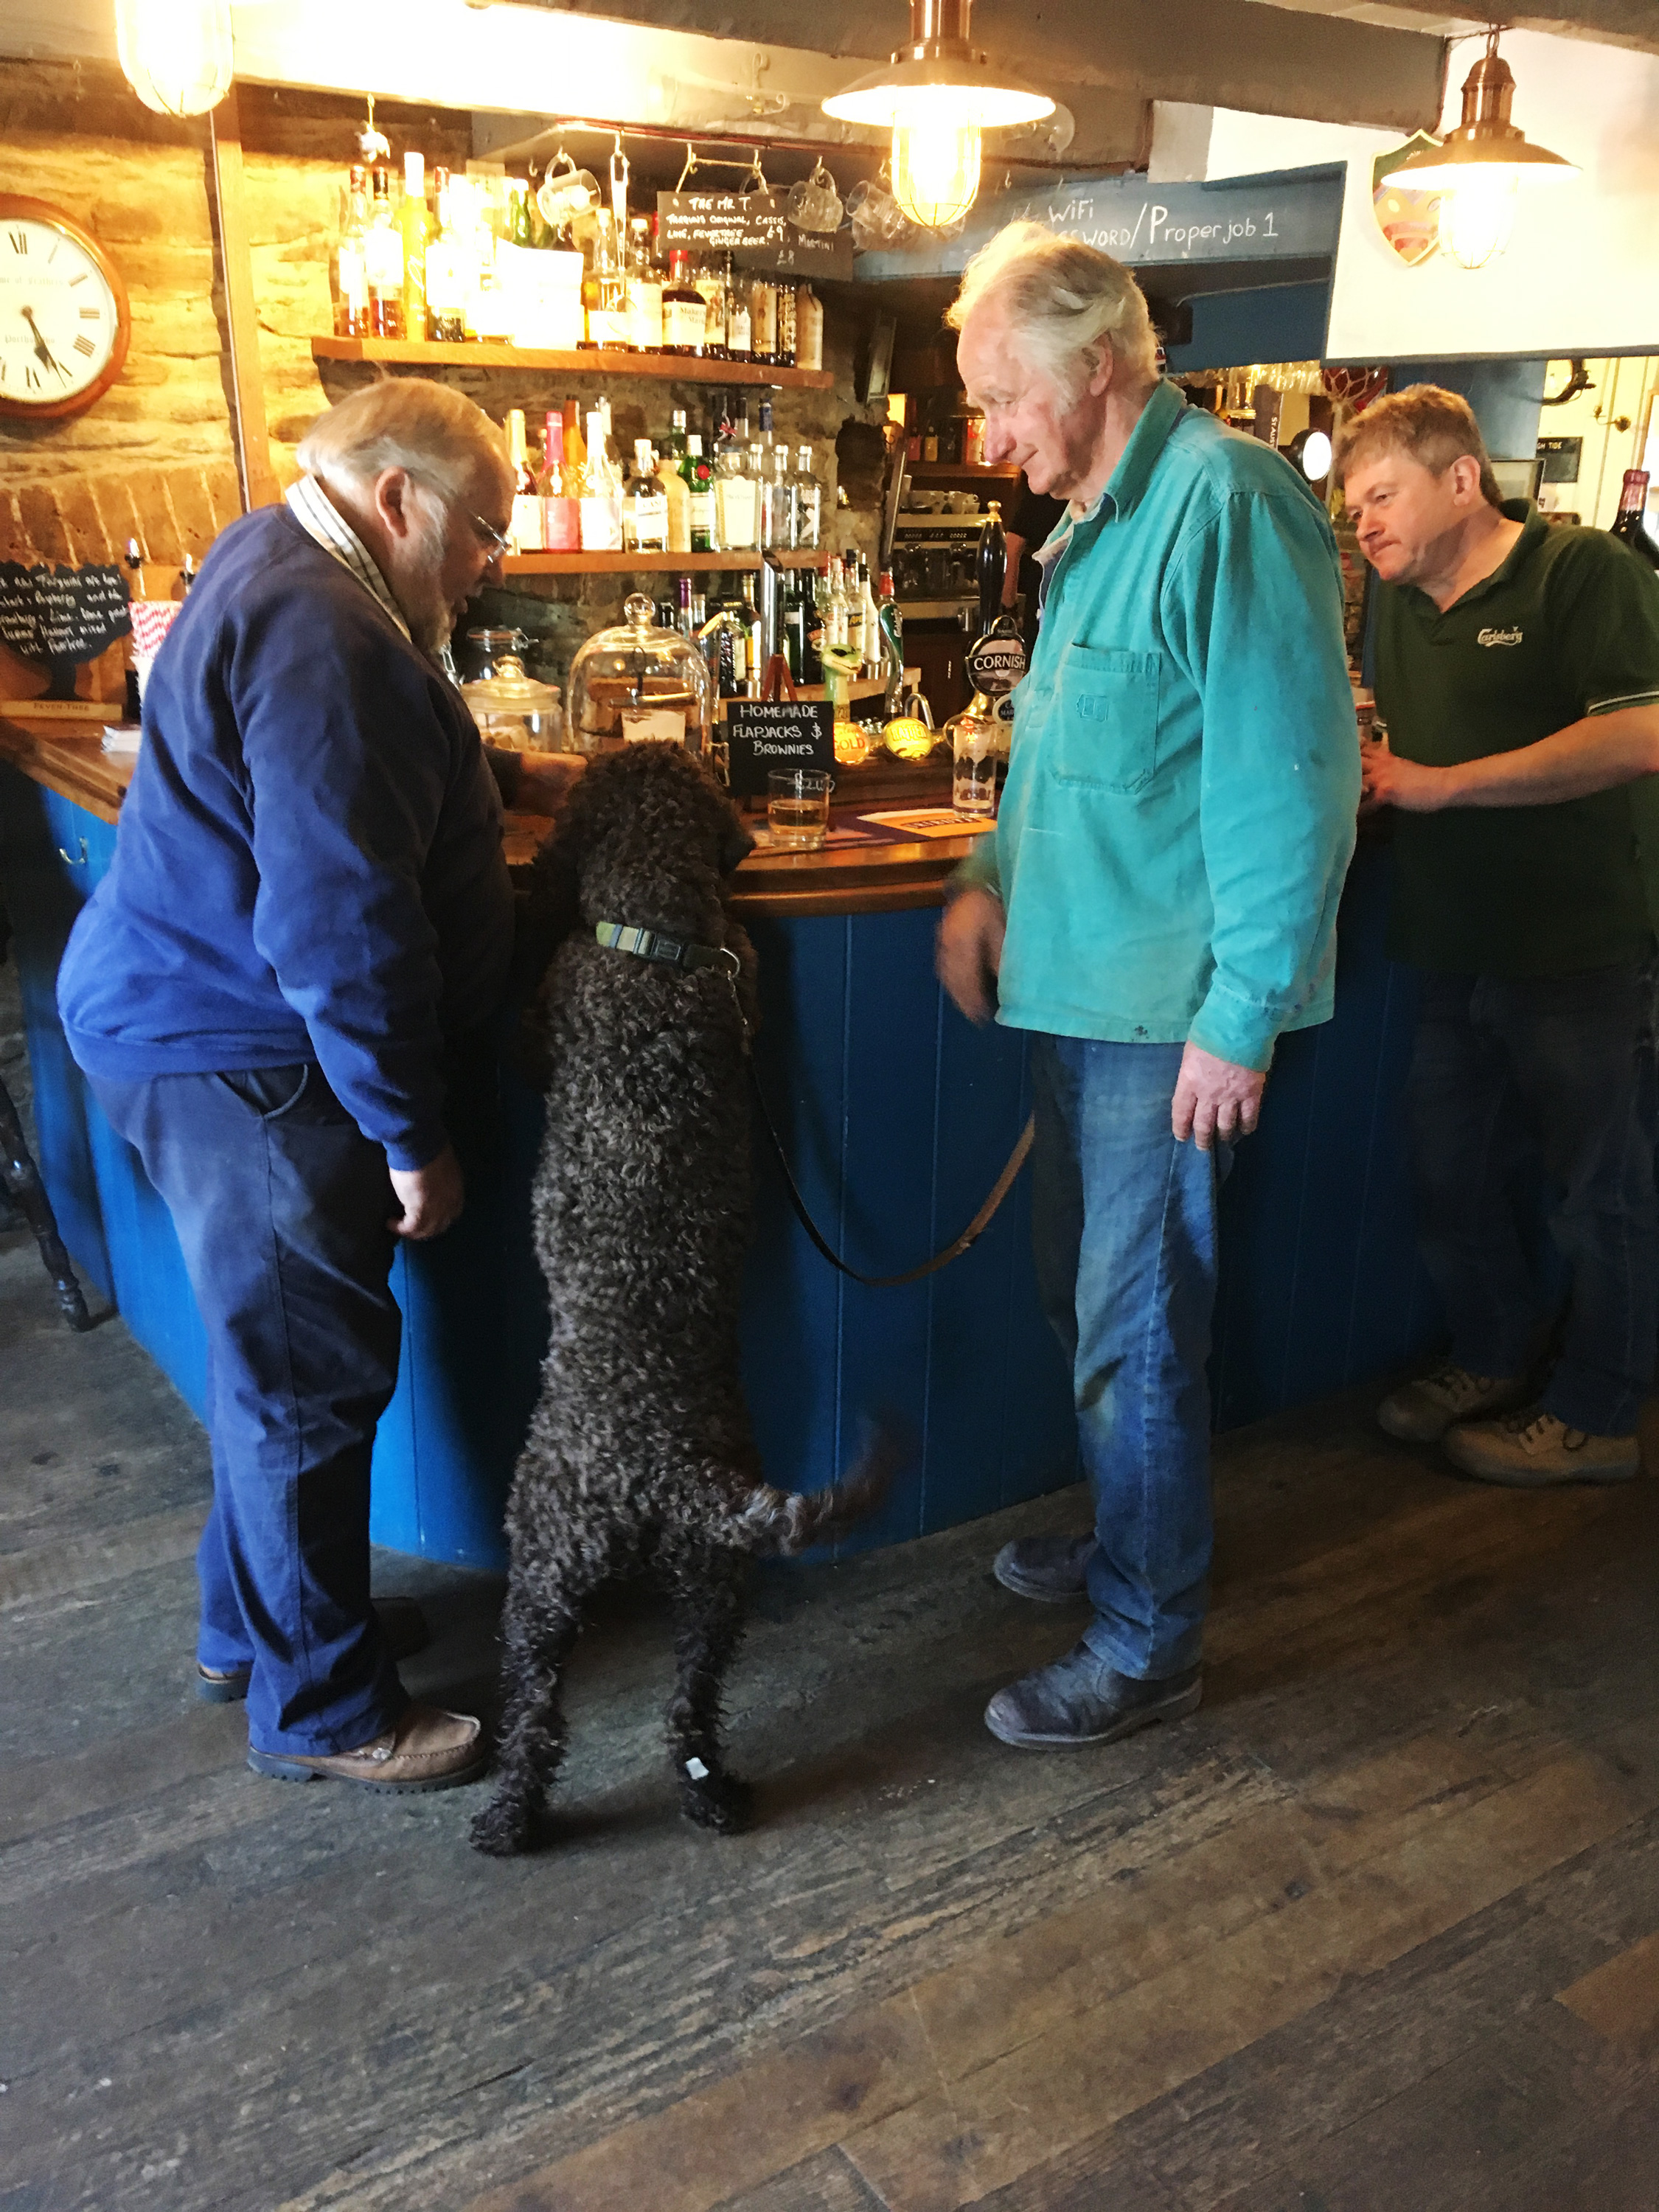 Dog friendly pub